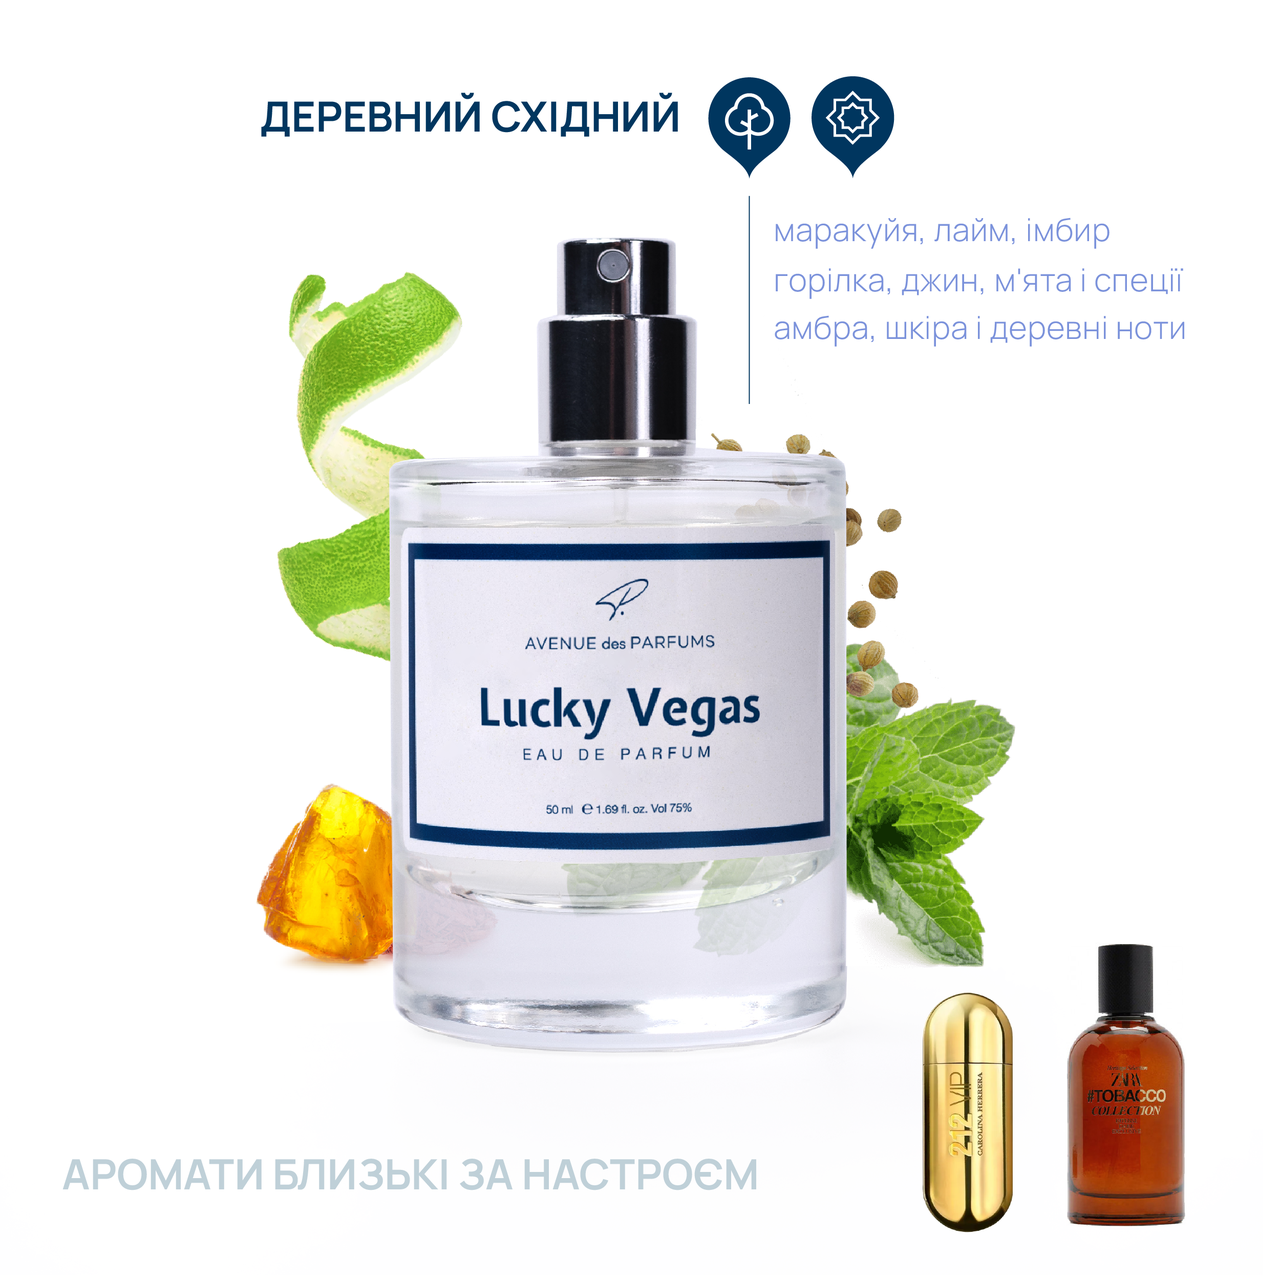 Духи мужские Lucky Vegas AVENUE des PARFUMS  парфюм 30 Оригинал 30